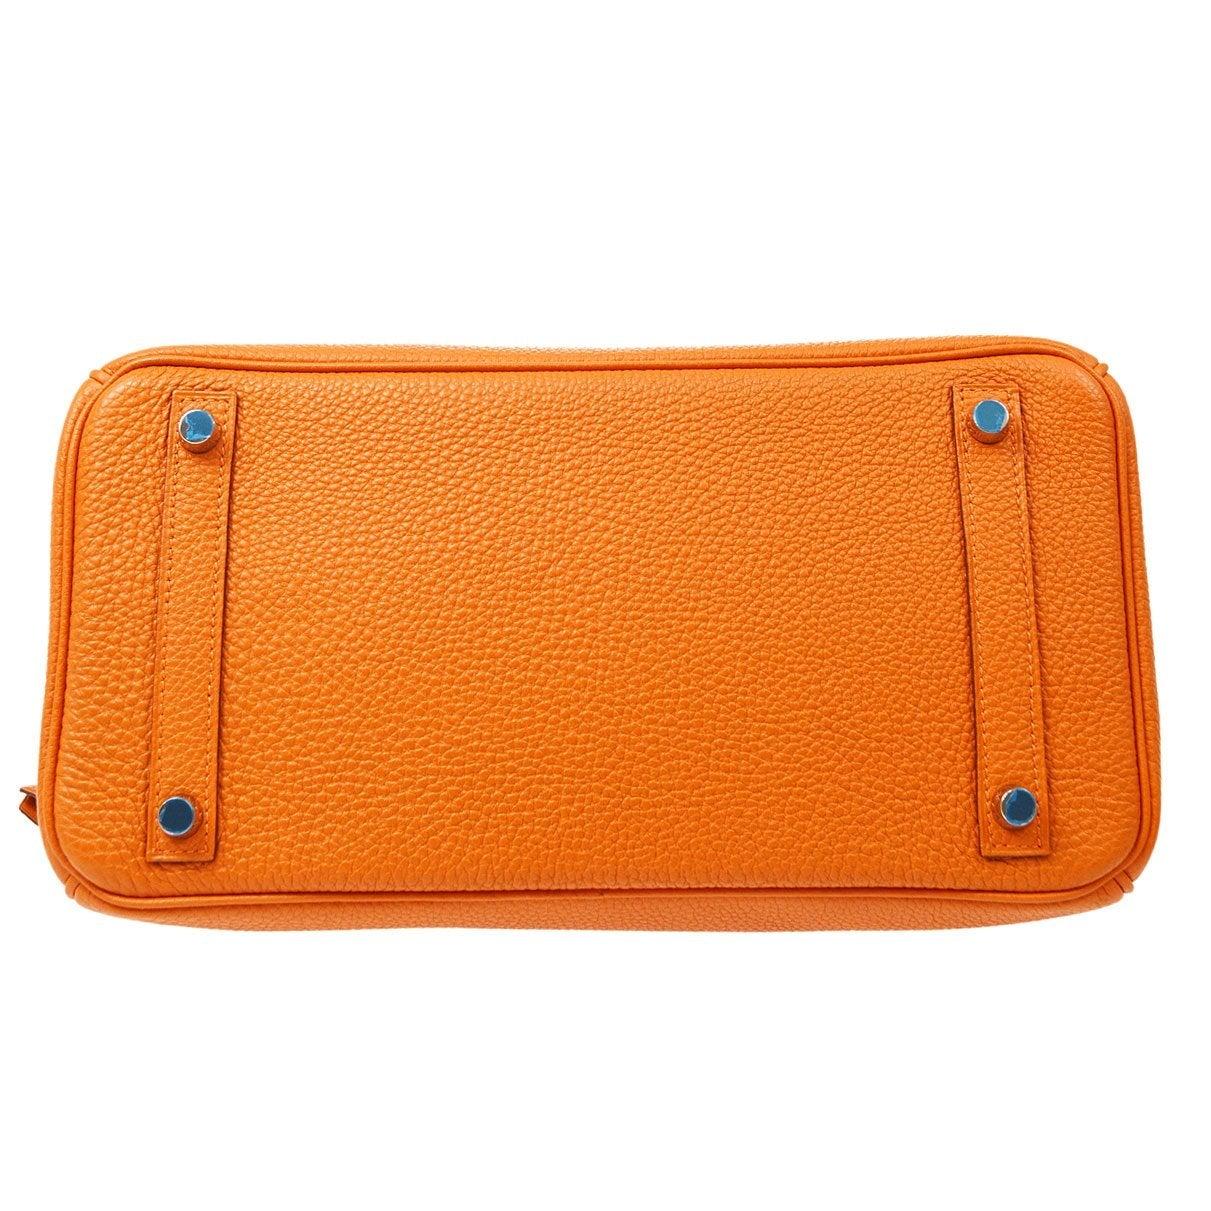 HERMES Birkin 30 Orange Togo Leather Gold Hardware Top Handle Tote Bag ...